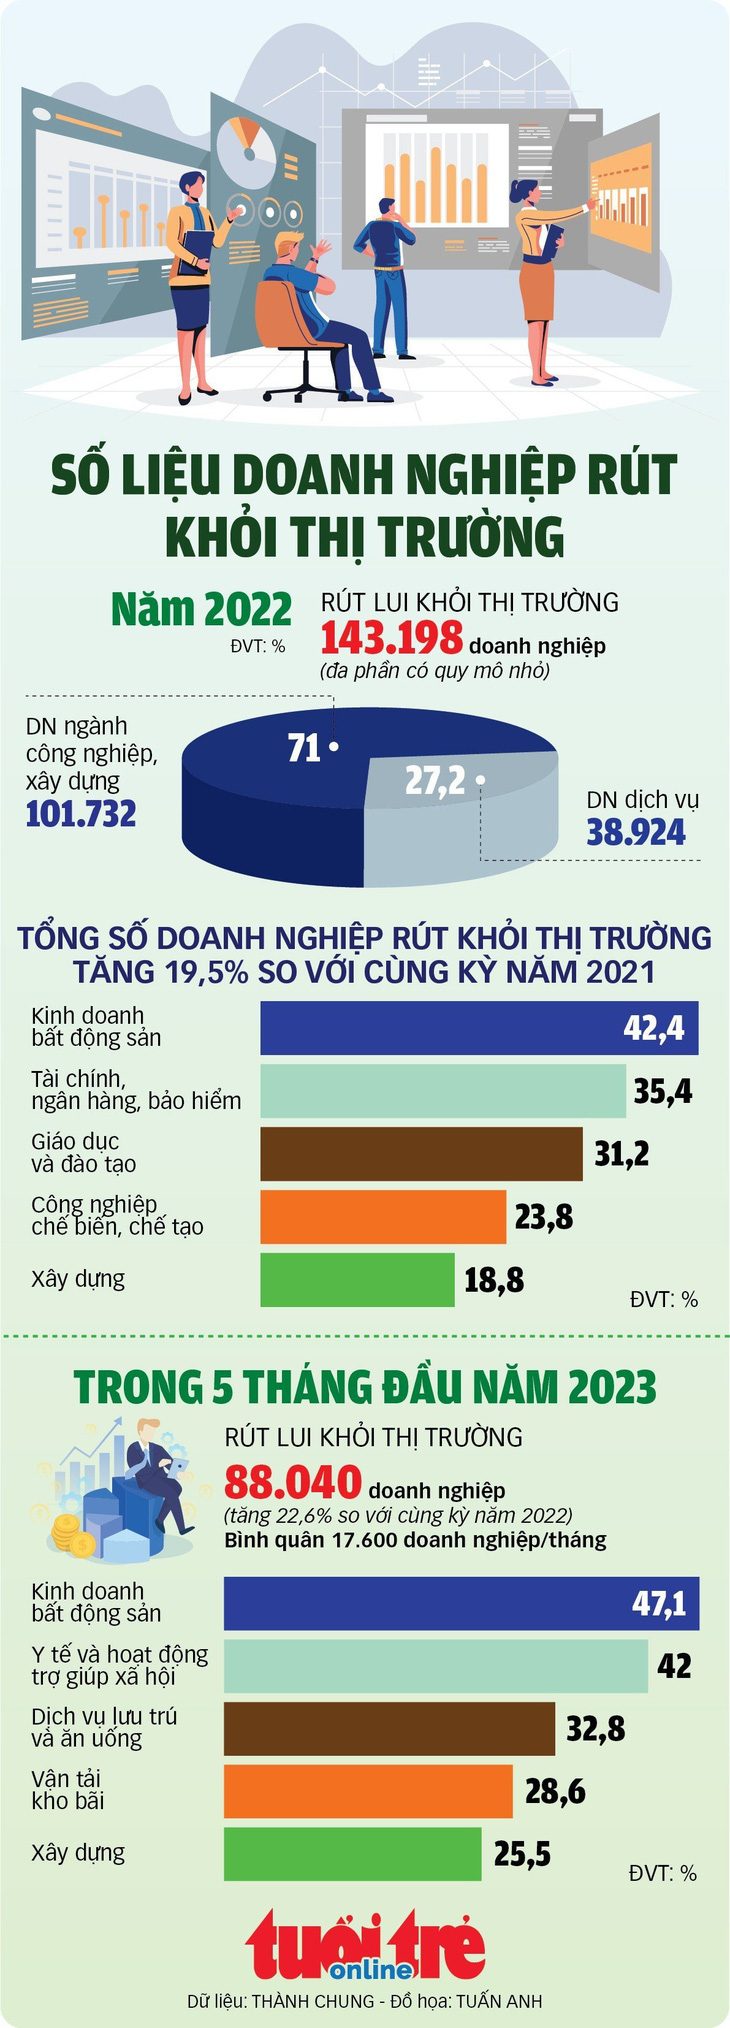 Suy giảm tiêu dùng toàn cầu không ảnh hưởng tăng trưởng logistics Việt’